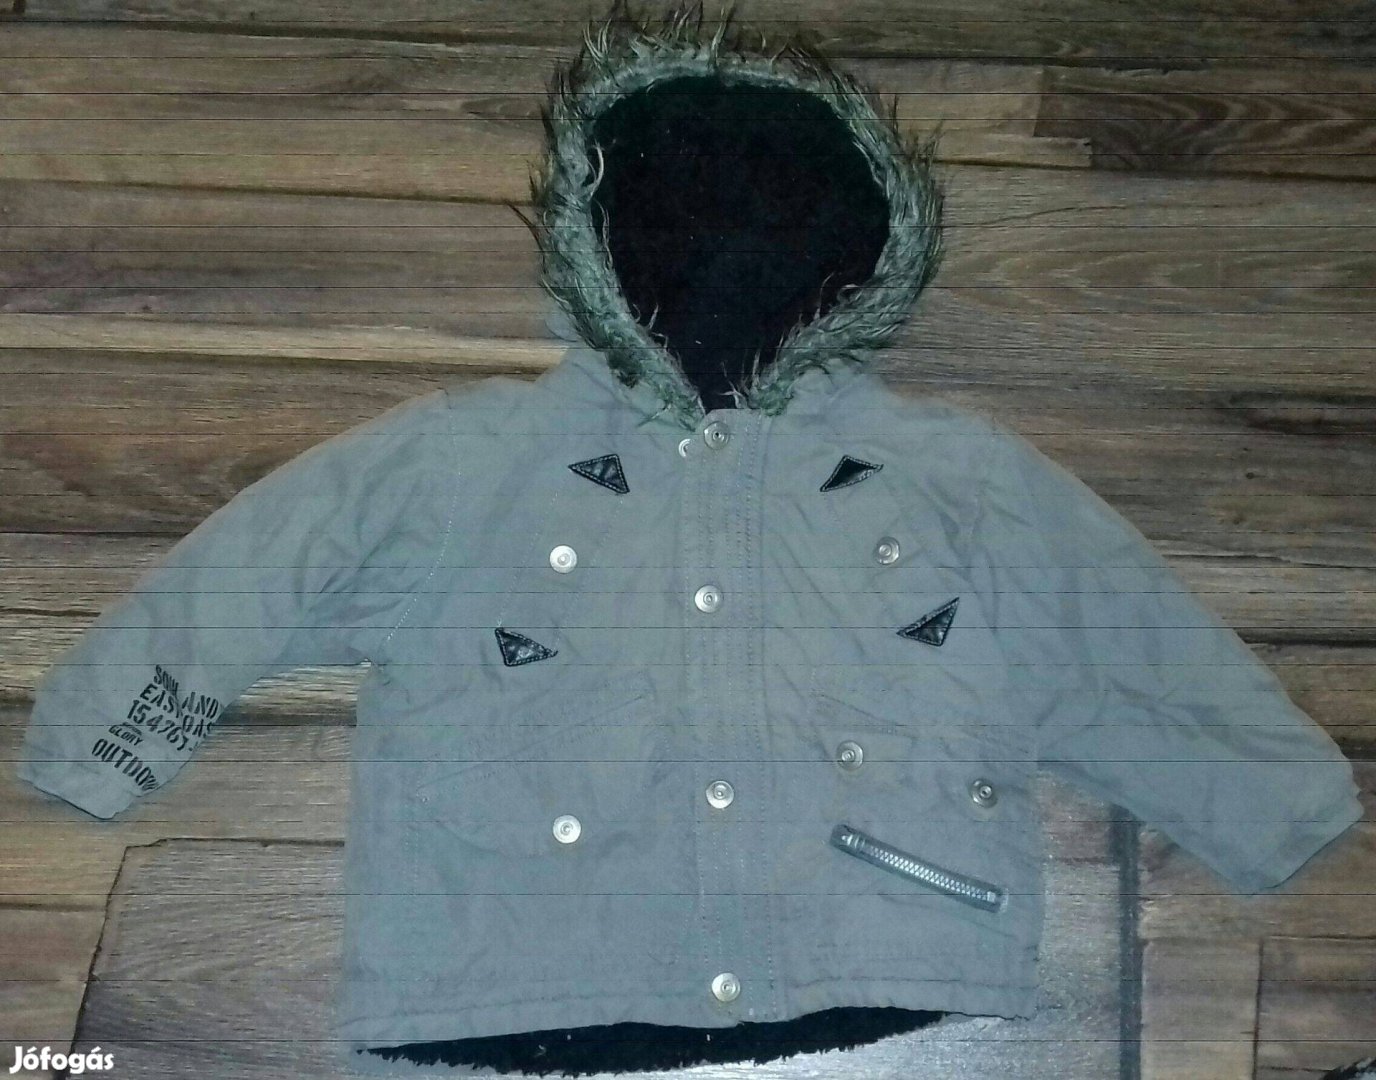 Vagány szőrme kapucnis szürke téli kabát, 80-86